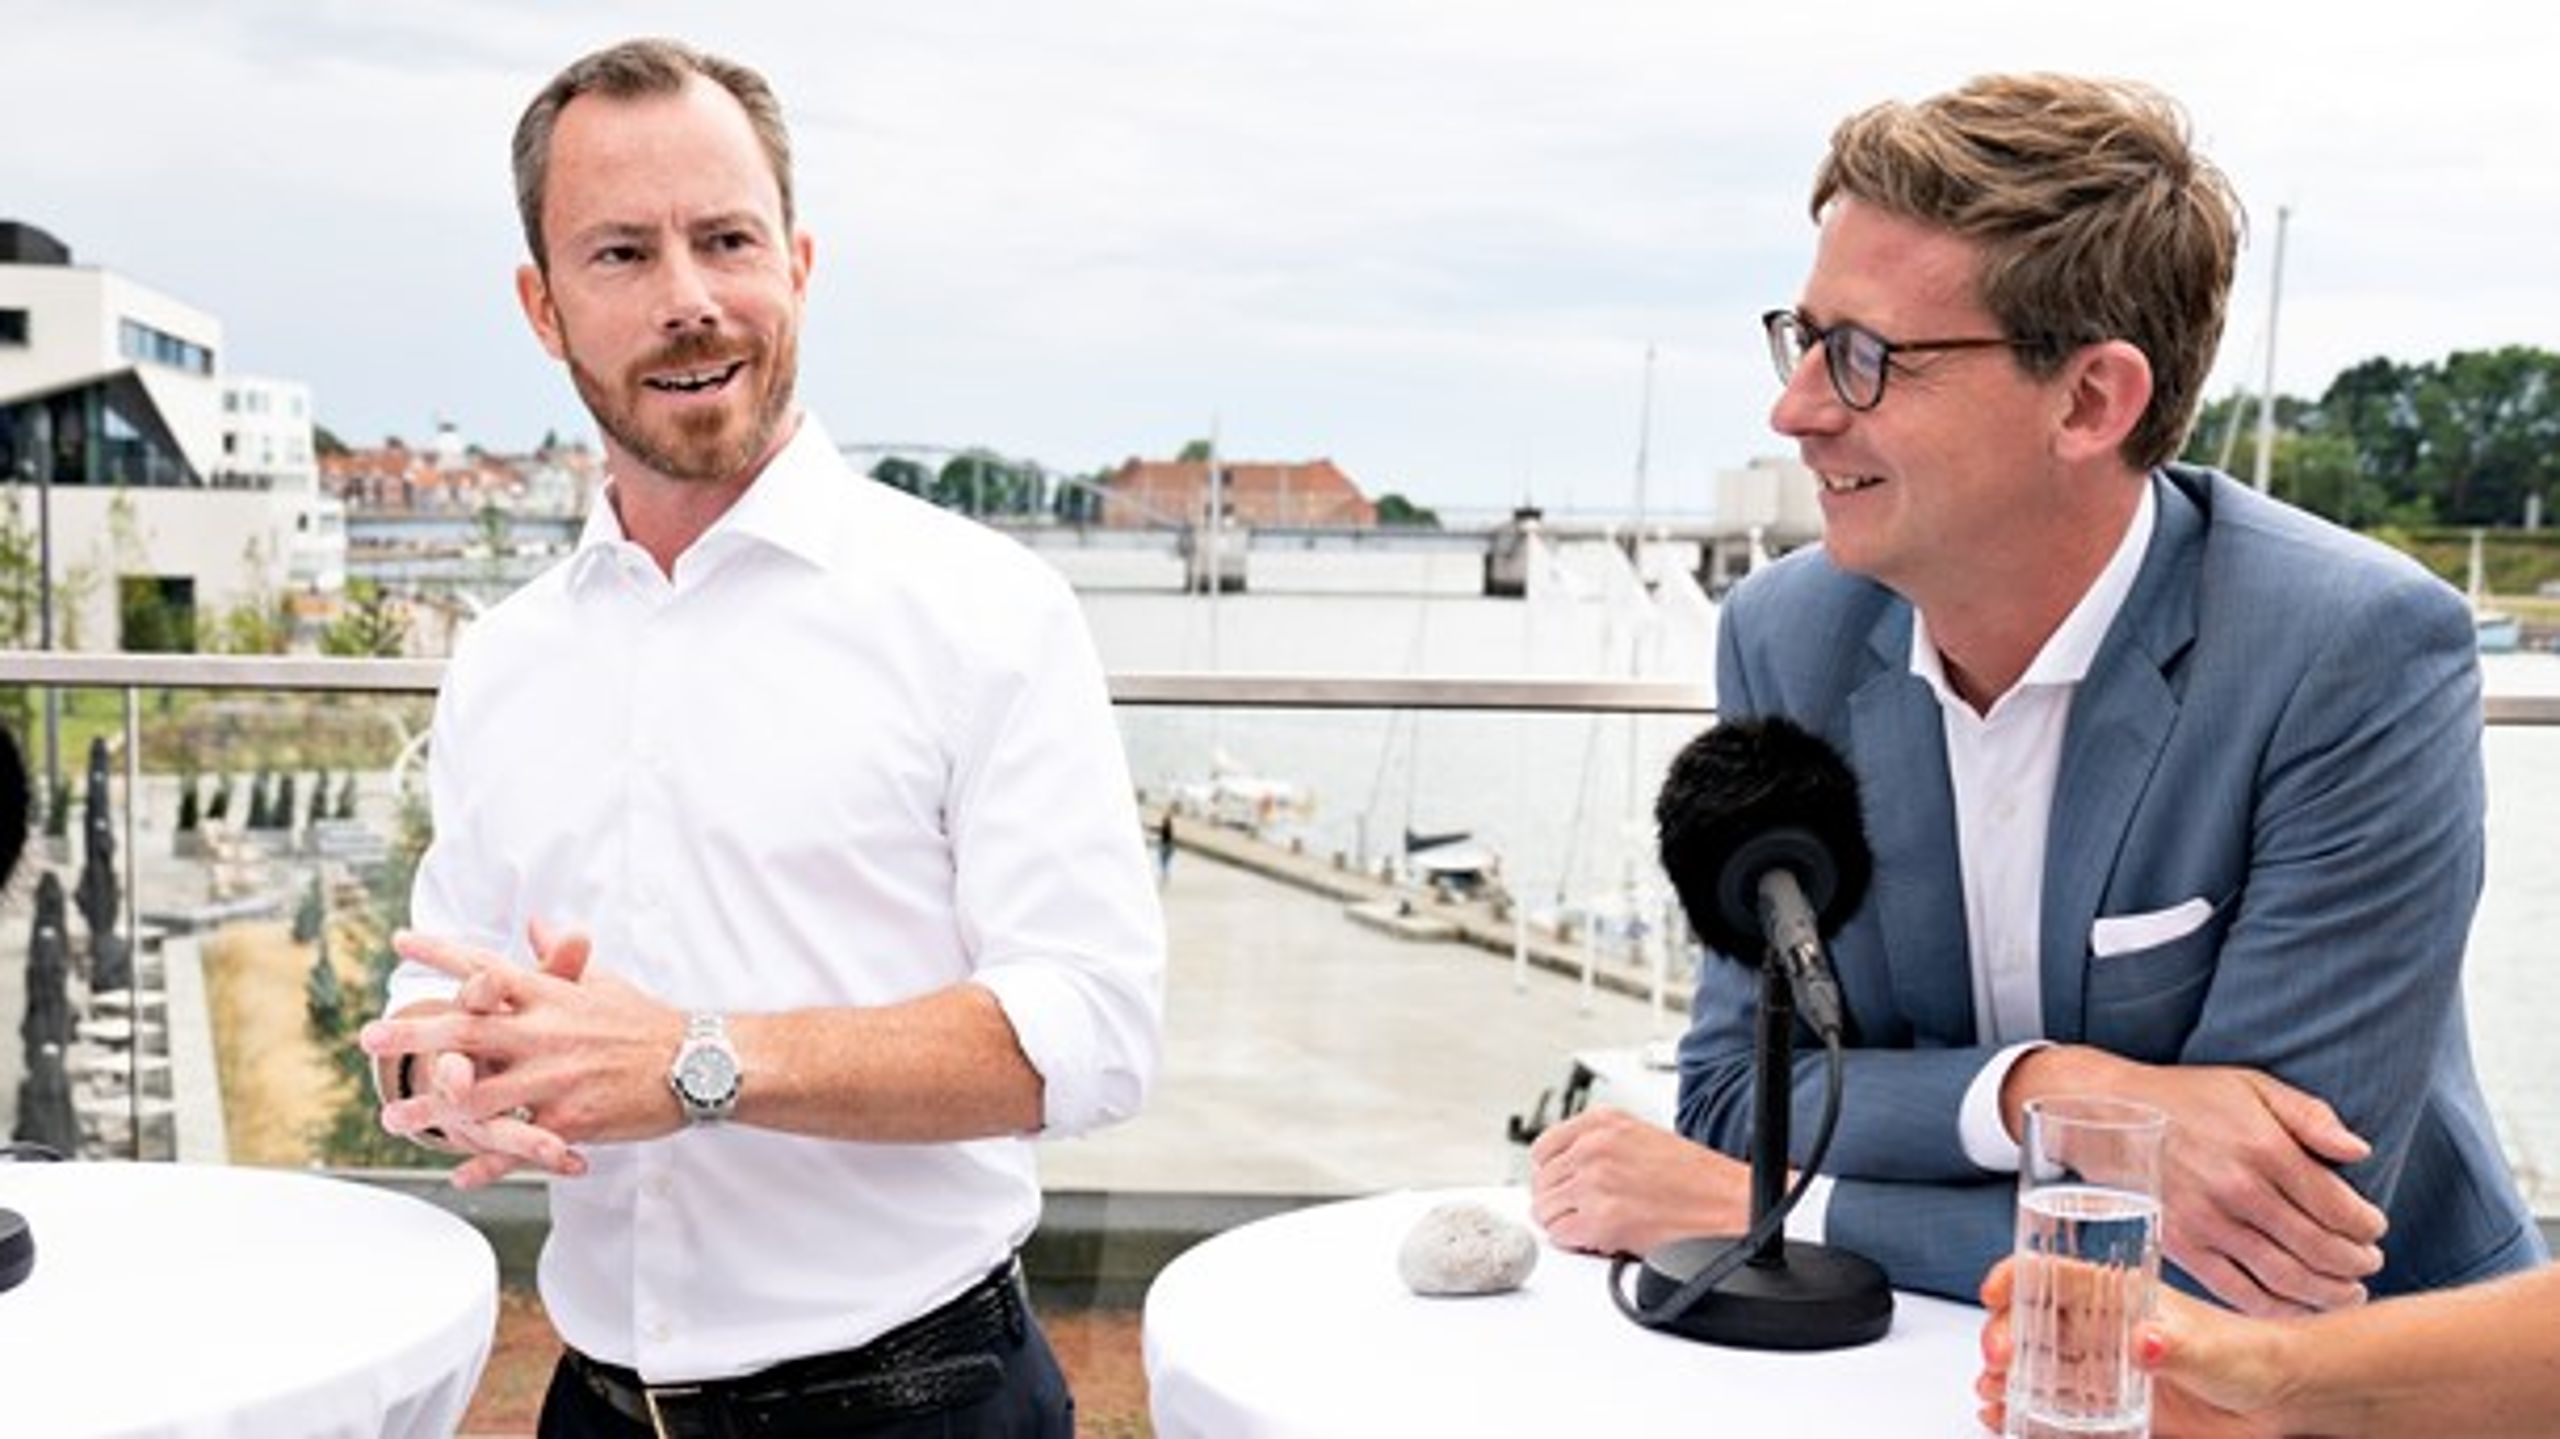 Jakob Ellemann-Jensen har adopteret Støjberg-kampagnens spinlingo om "Barnebrudskommissionen," som officielt hedder "Instrukskommissionen," skriver Jarl Cordua.